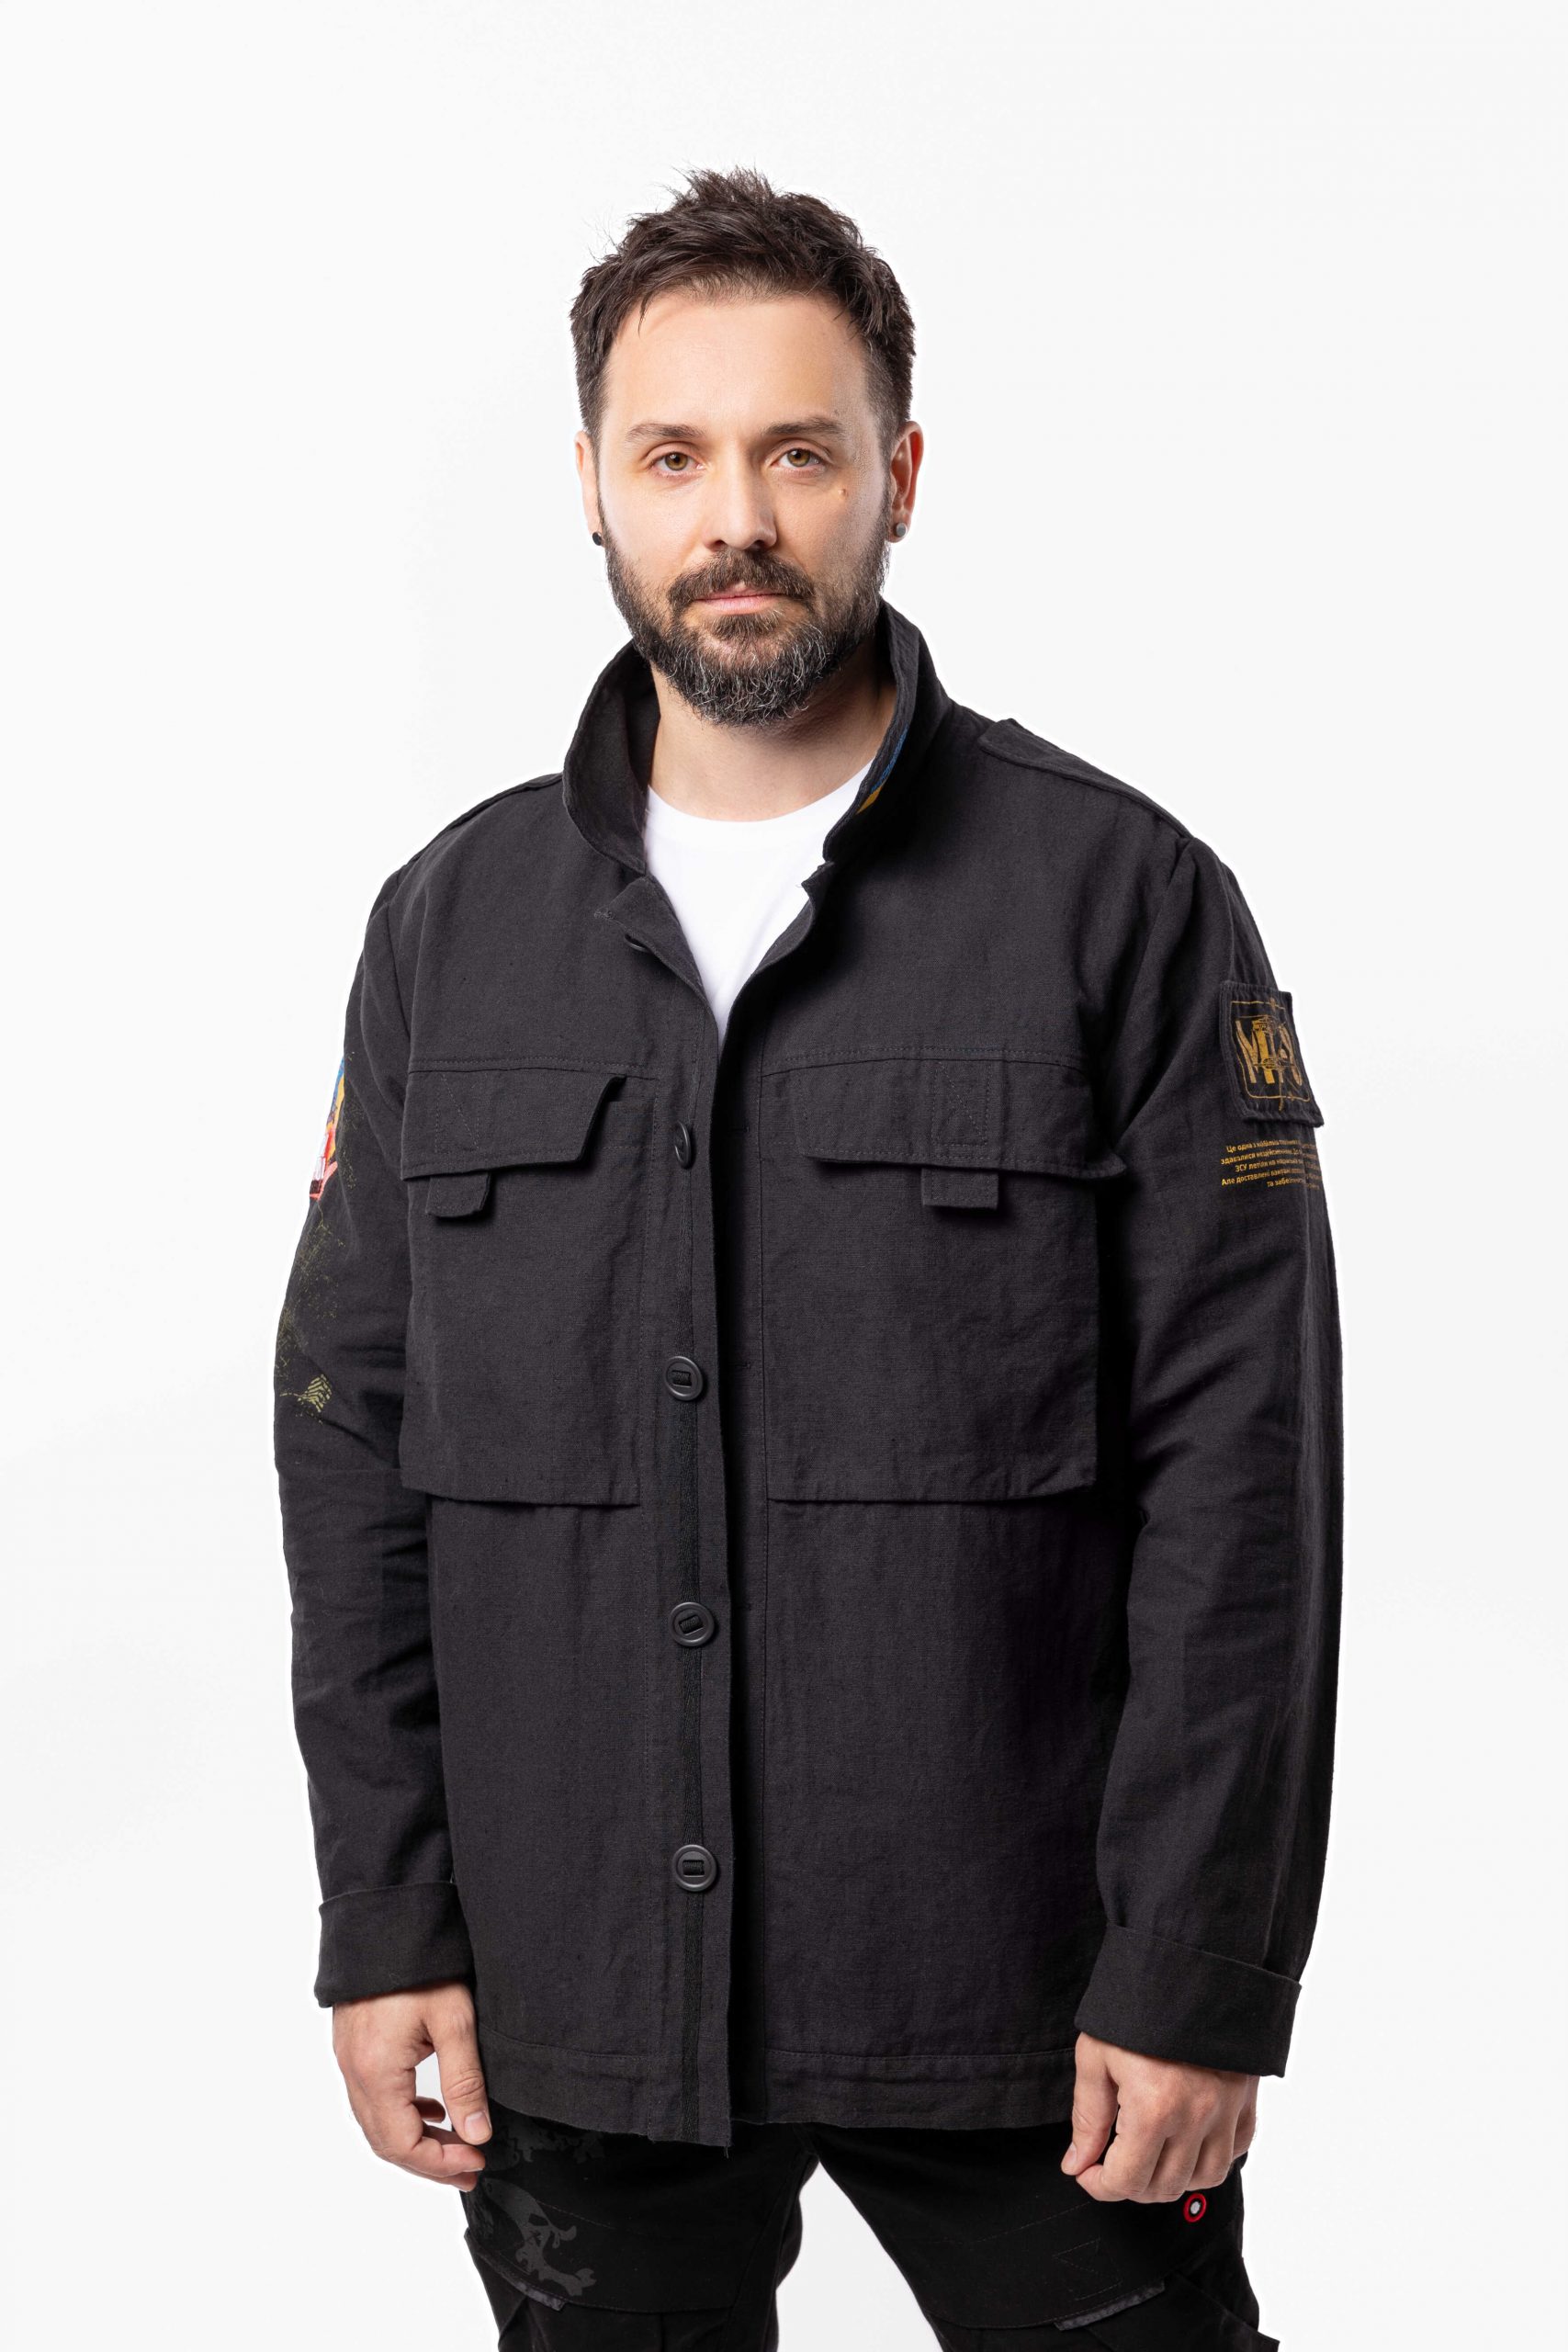 Men's Shirt-Jacket Mission Mariupol. Color black. 2.